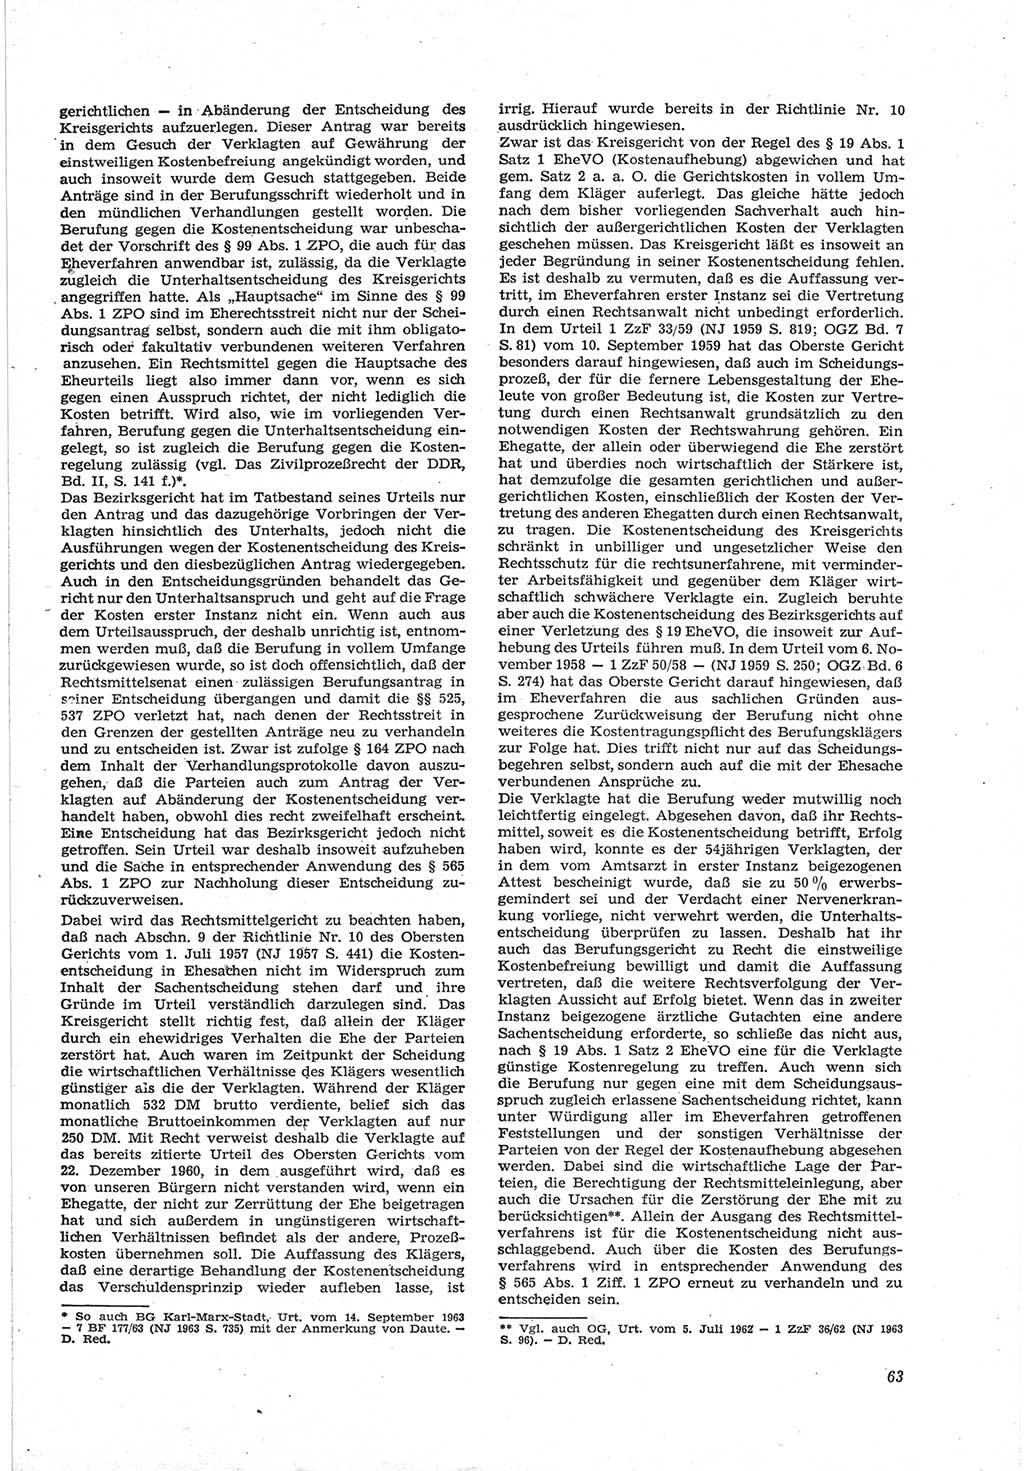 Neue Justiz (NJ), Zeitschrift für Recht und Rechtswissenschaft [Deutsche Demokratische Republik (DDR)], 18. Jahrgang 1964, Seite 63 (NJ DDR 1964, S. 63)